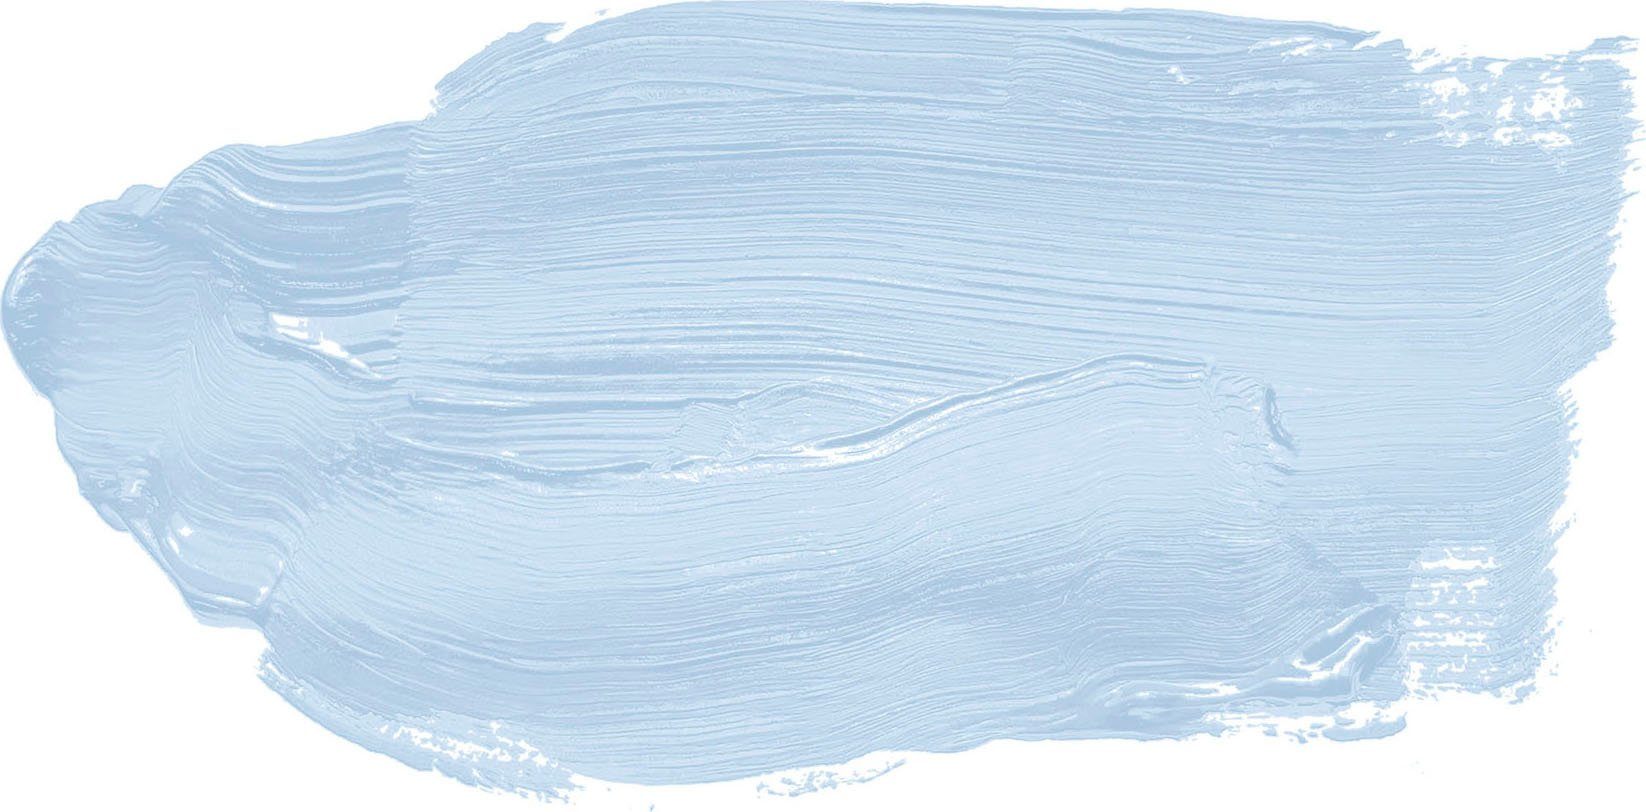 A.S. KITCHEN, Deckenfarbe seidenmatt, COLOR TCK3002 Flur und Blautöne Bonbon Wohnzimmer Création für Schlafzimmer Küche, THE Wand- Ice